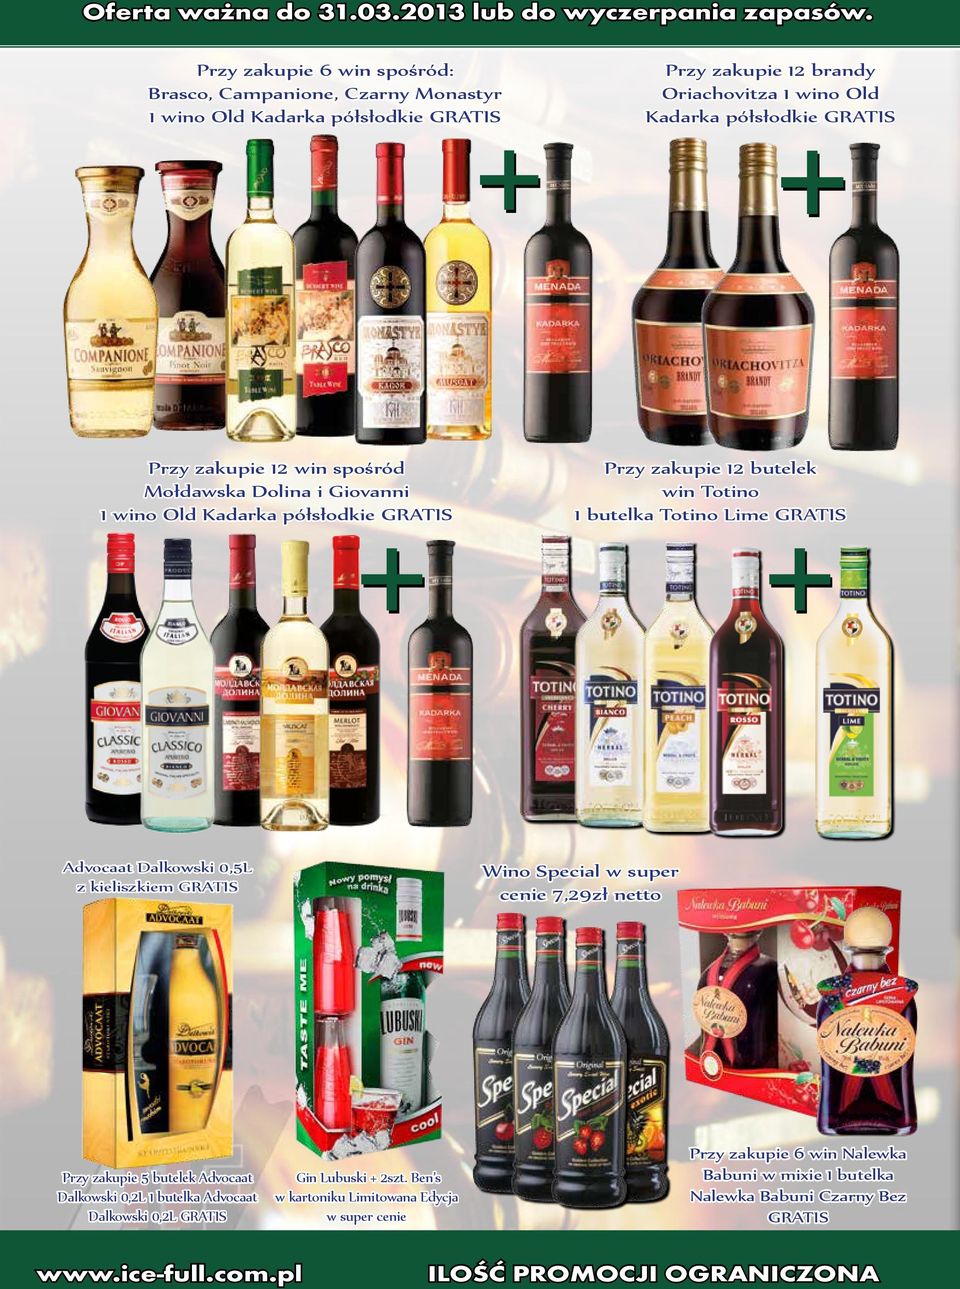 Totino Lime GRATIS Advocaat Dalkowski 0,5L z kieliszkiem GRATIS Wino Special w super cenie 7,29zł netto Przy zakupie 5 butelek Advocaat Dalkowski 0,2L 1 butelka